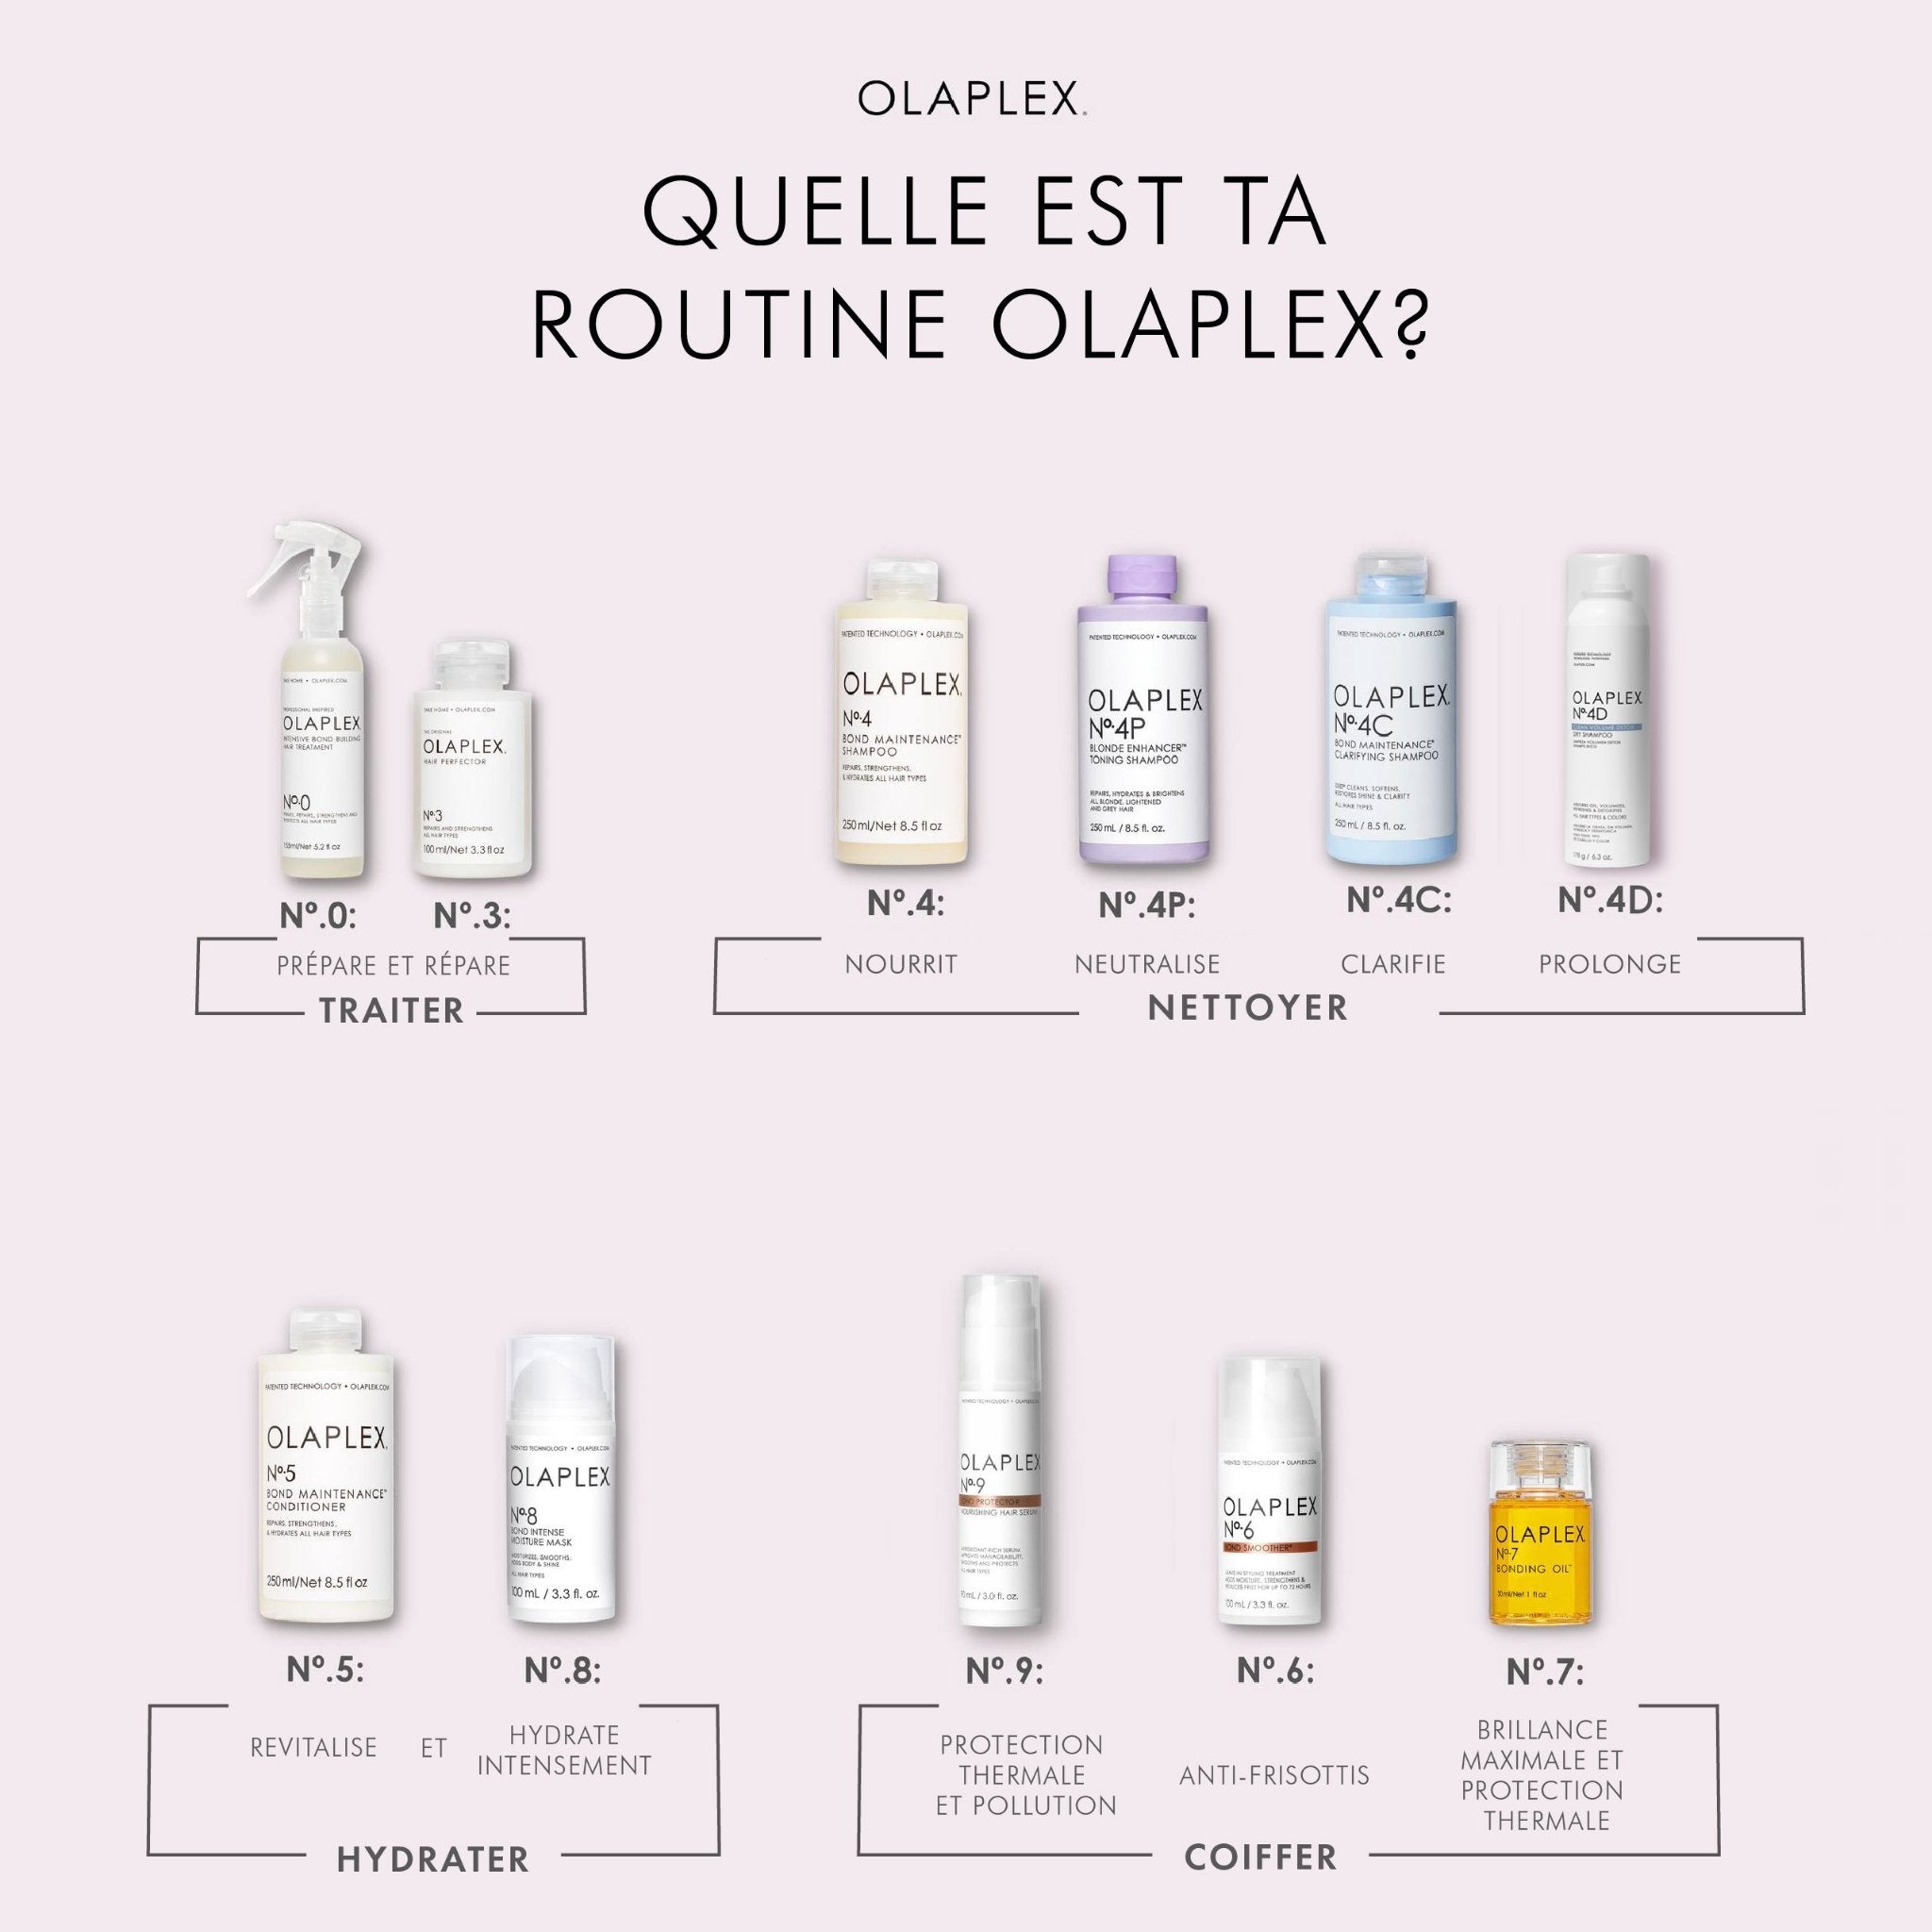 Olaplex. Traitement Perfecteur de Cheveux No. 3 - 100 ml - Concept C. Shop